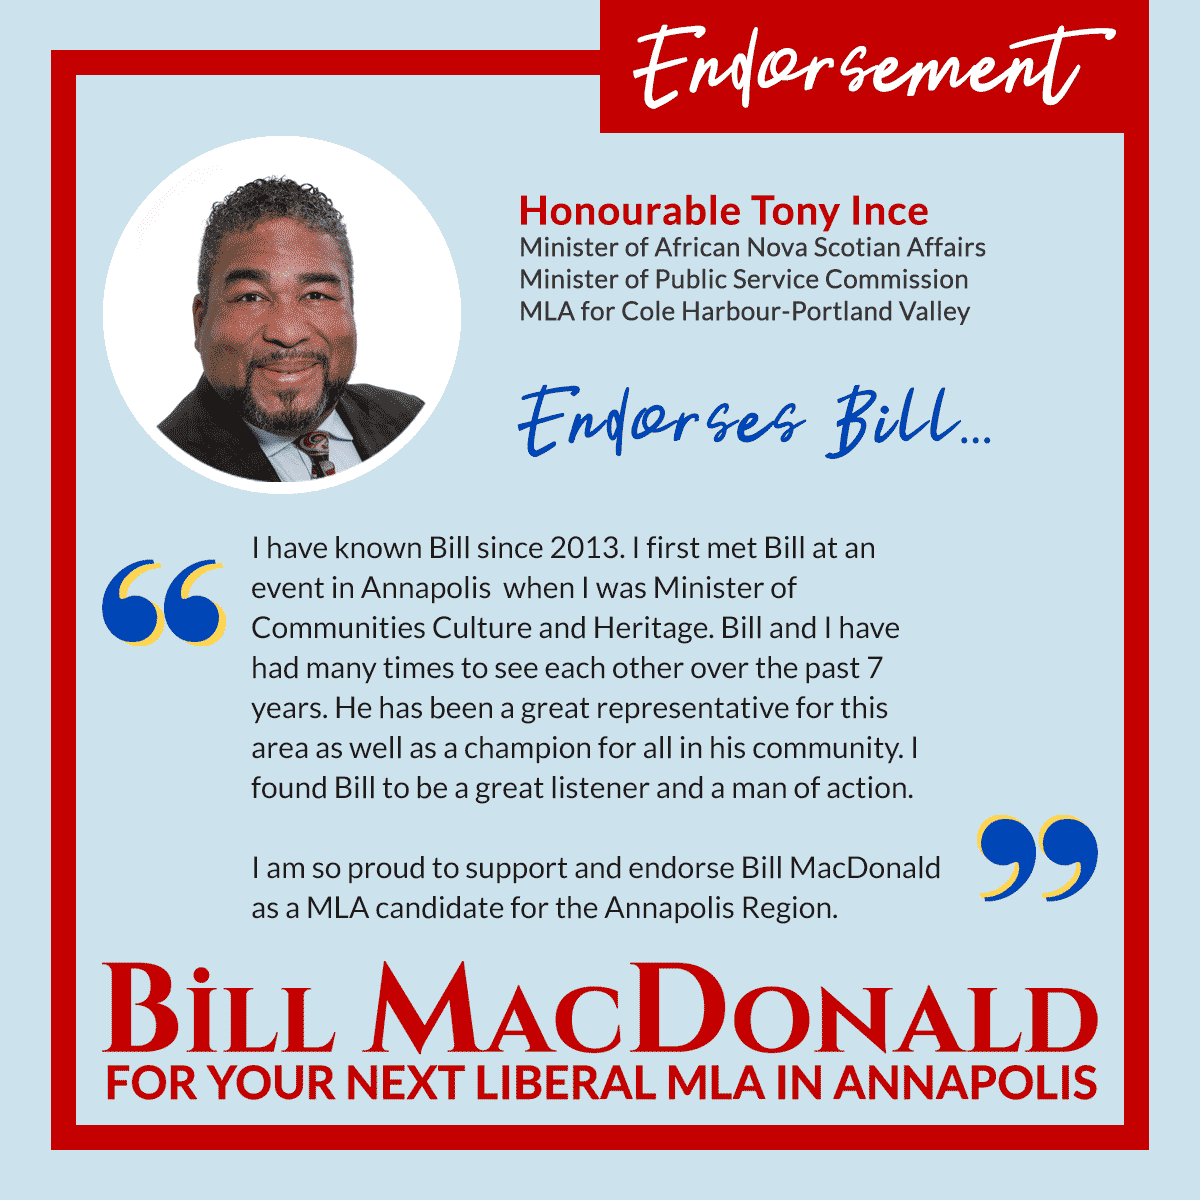 Tony Ince endorses Bill MacDonald for Annapolis MLA.